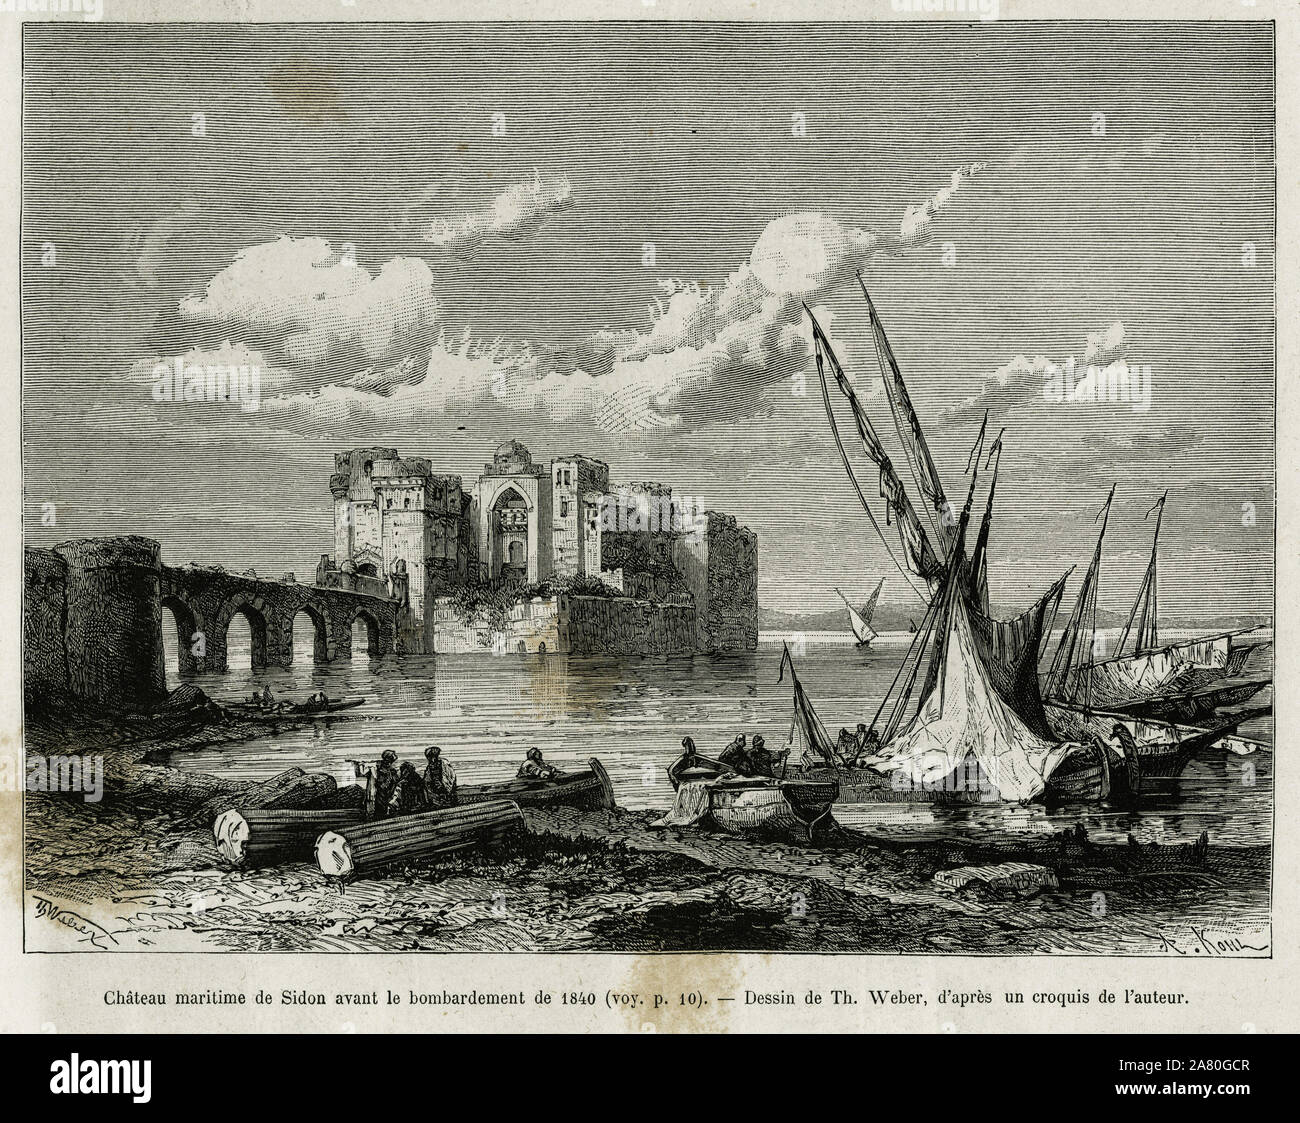 Le chateau maritime de Sidon avant le bombardement de 1840. Gravure de Th. Weber, pour illustrer le recit La Syrie d'aujourd'hui, par M.Lortet, doyen Stock Photo